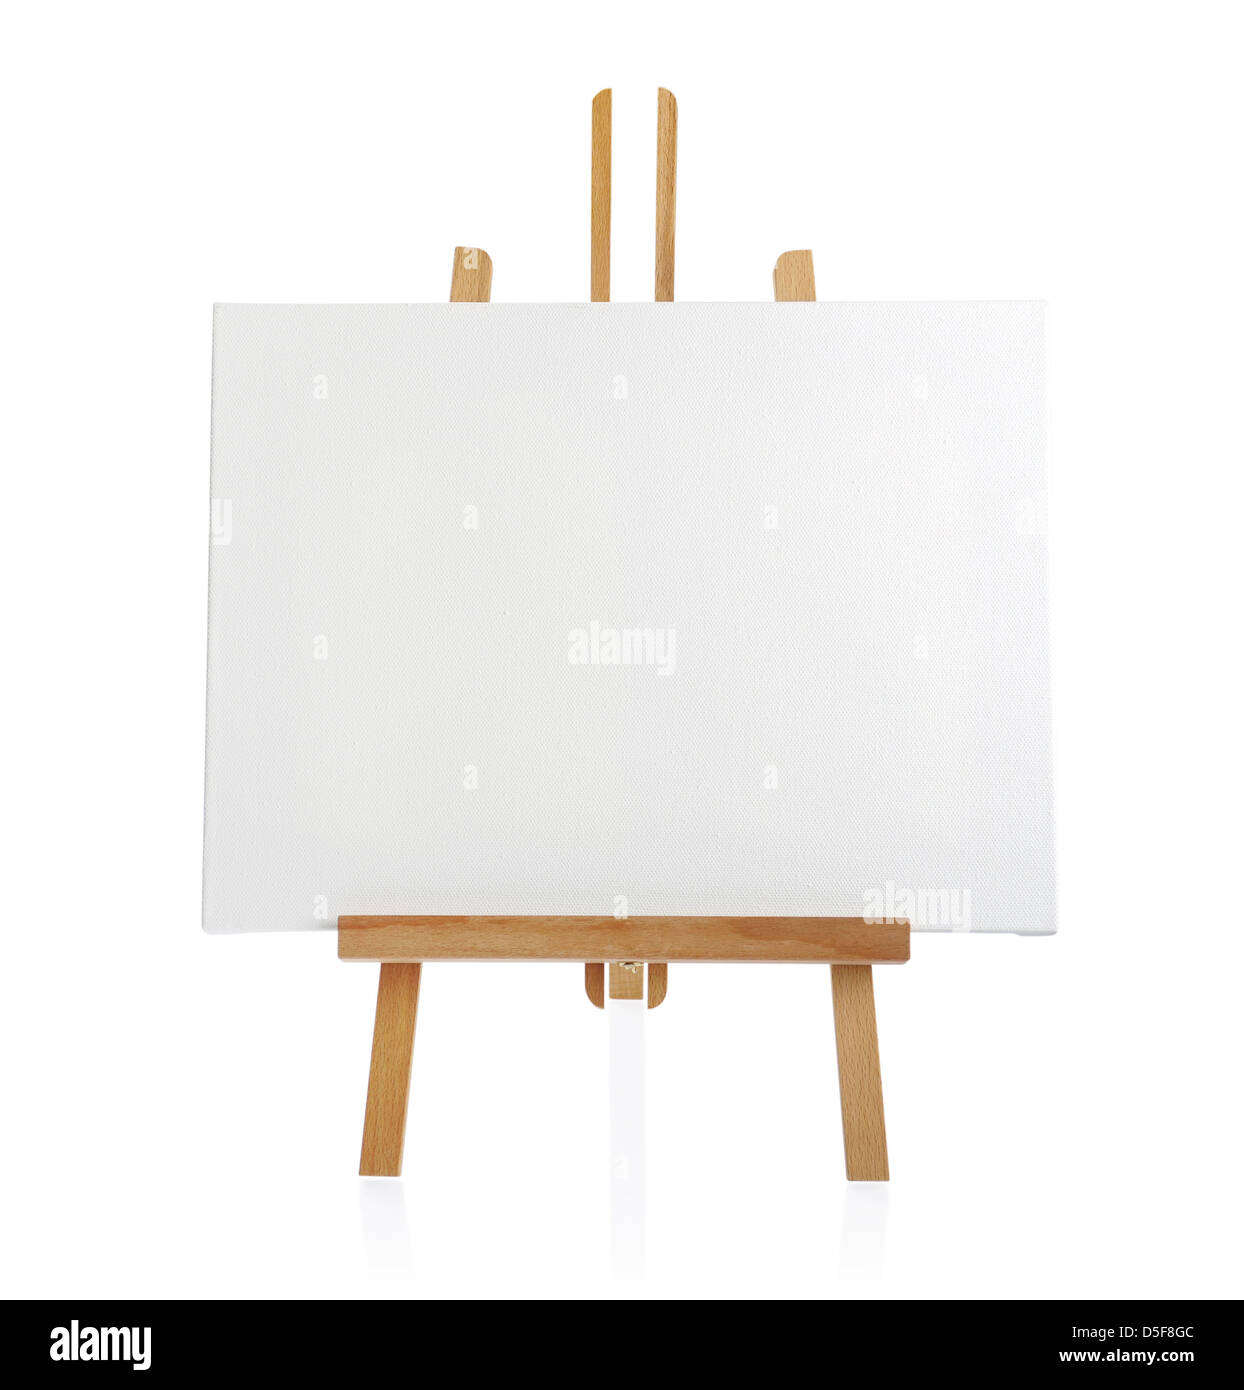 Caballete de madera con lienzo en blanco aislado sobre fondo blanco. Foto de stock